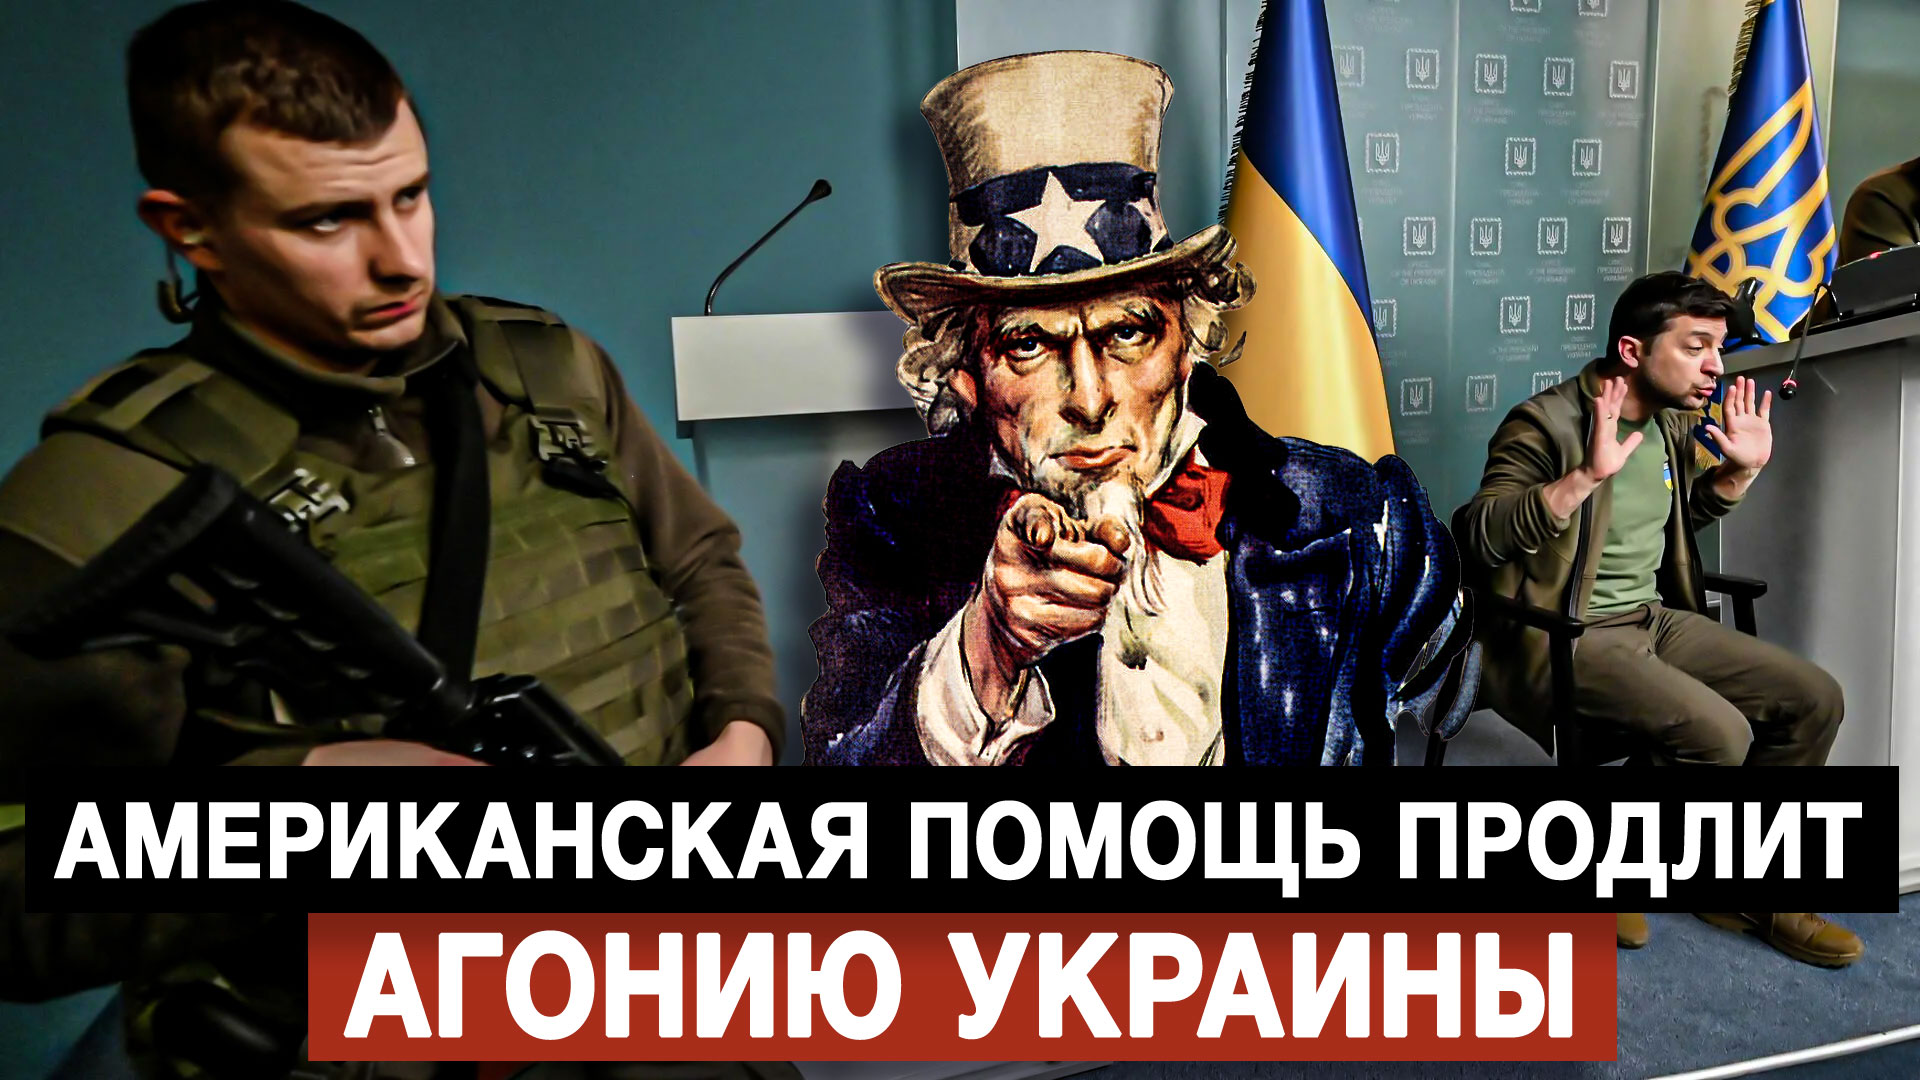 Американская помощь продлит агонию Украины